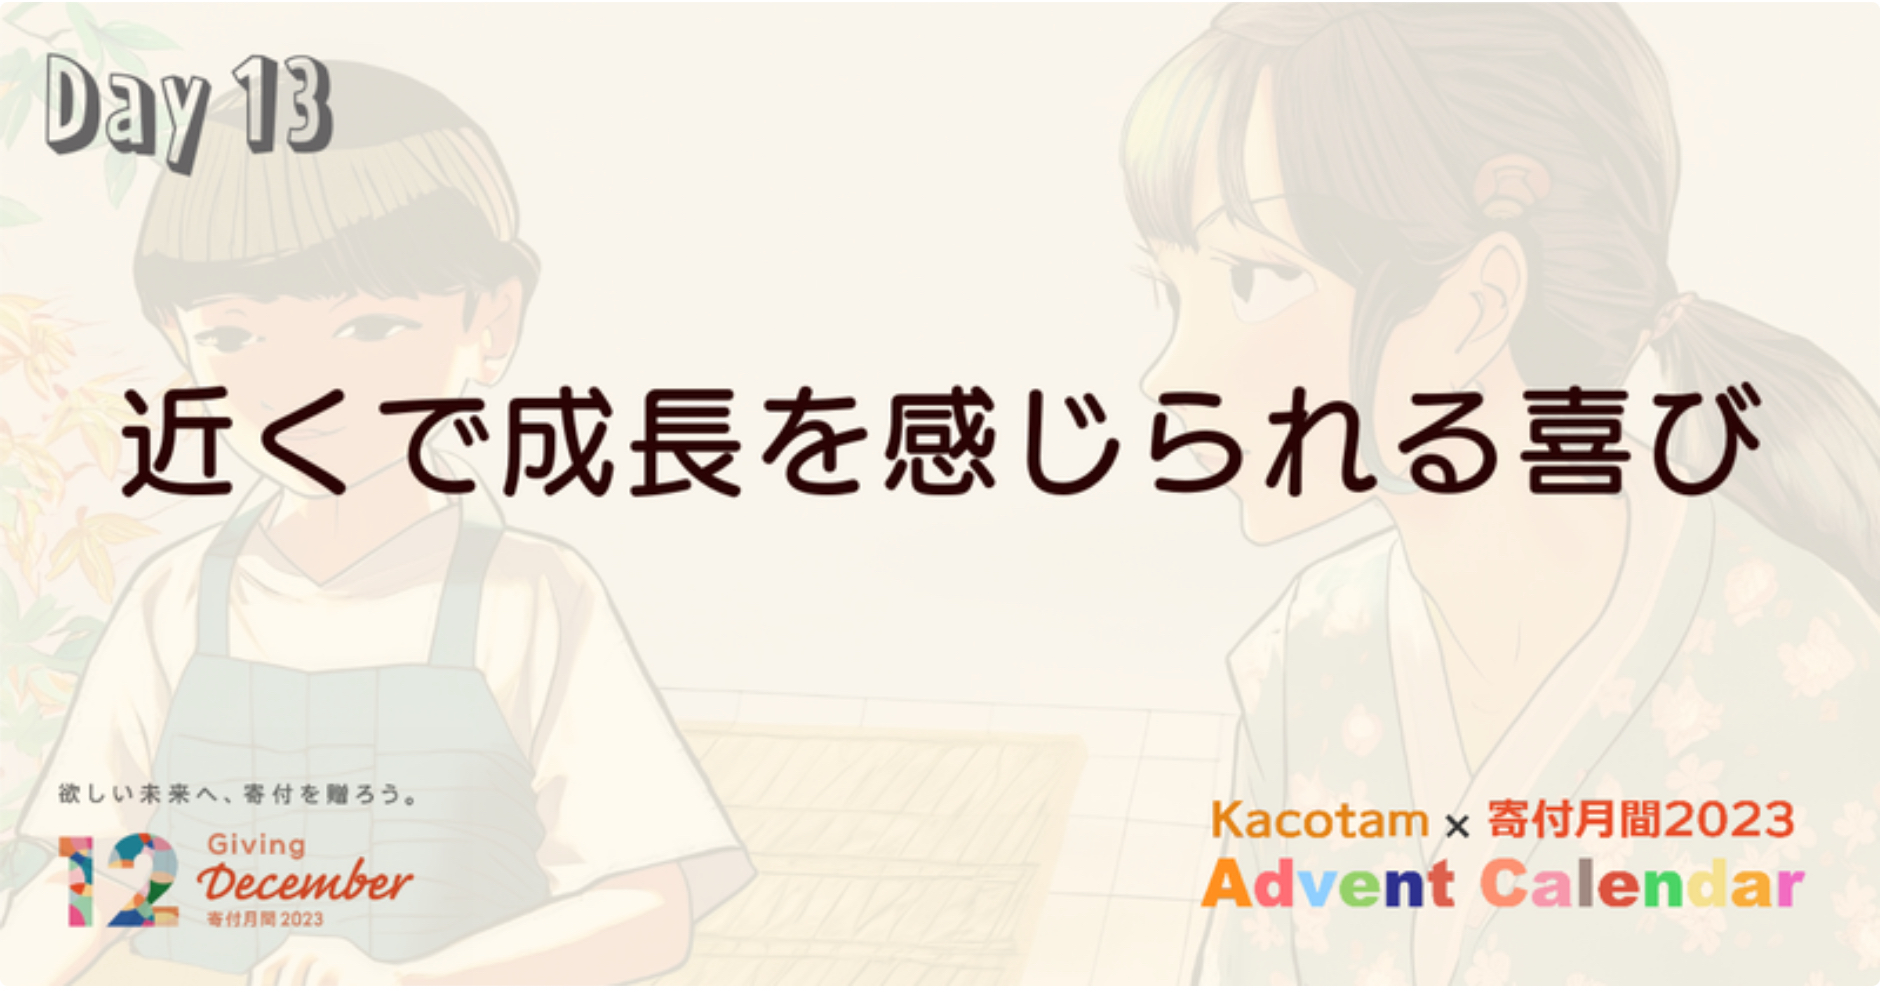 【13日目】「Kacotam x 寄付月間2023 アドベントカレンダー」の記事を公開しました